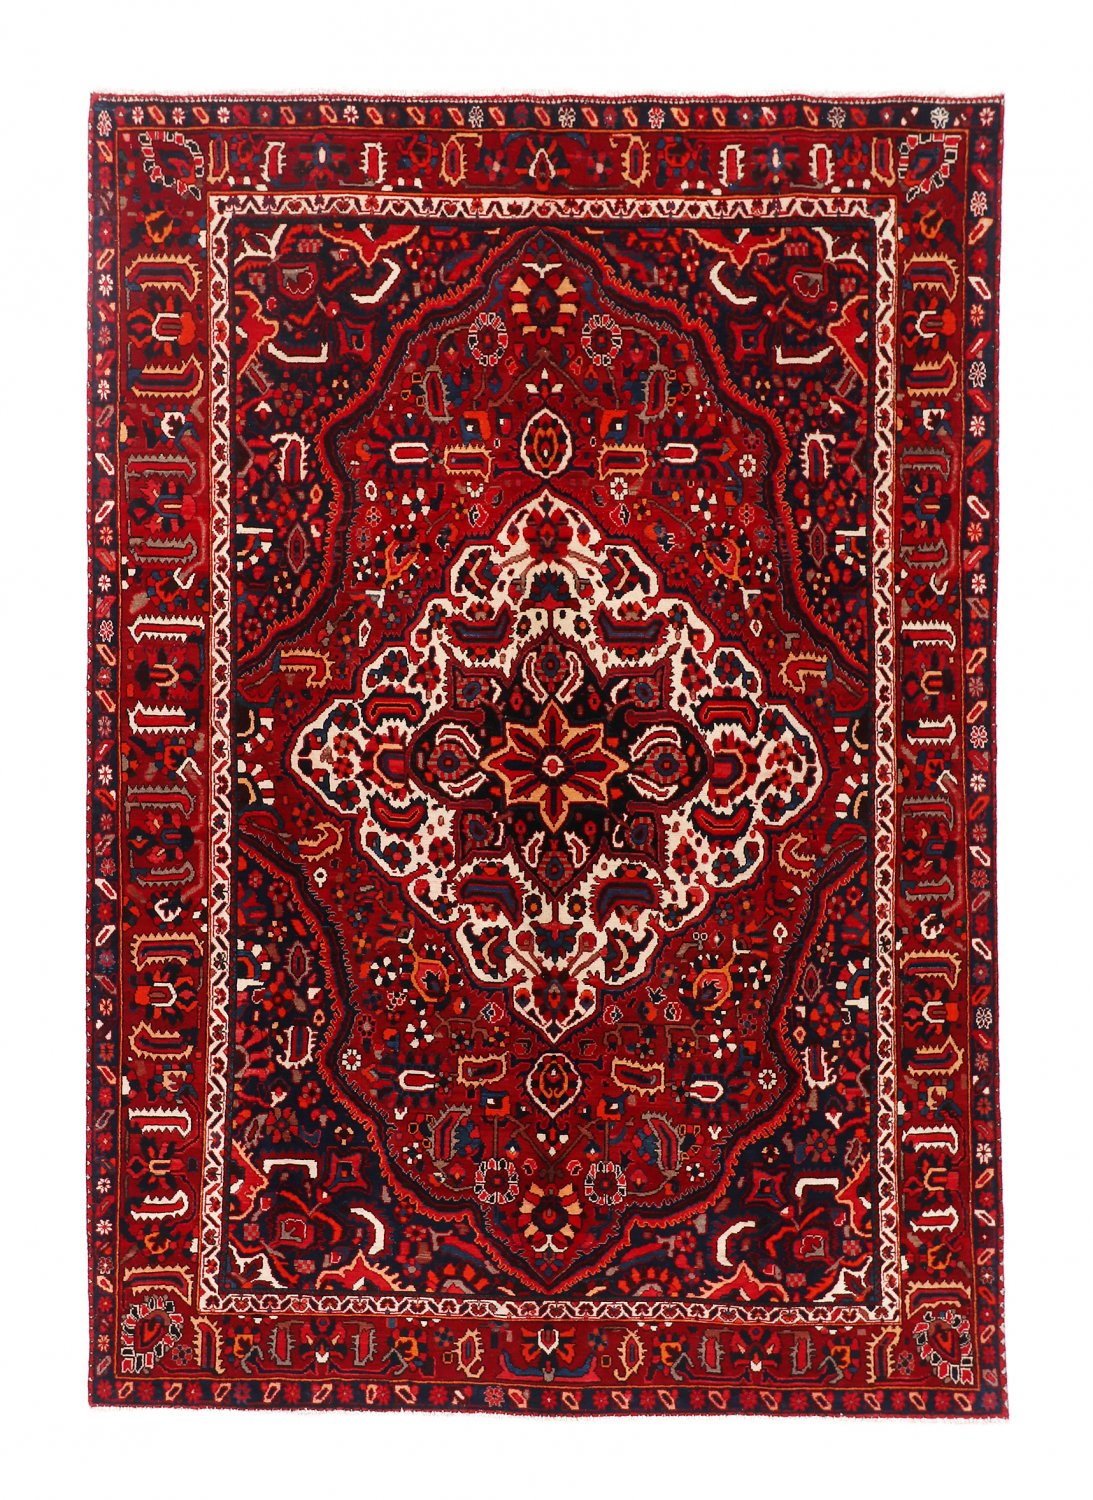 Persian rug Hamedan 302 x 202 cm